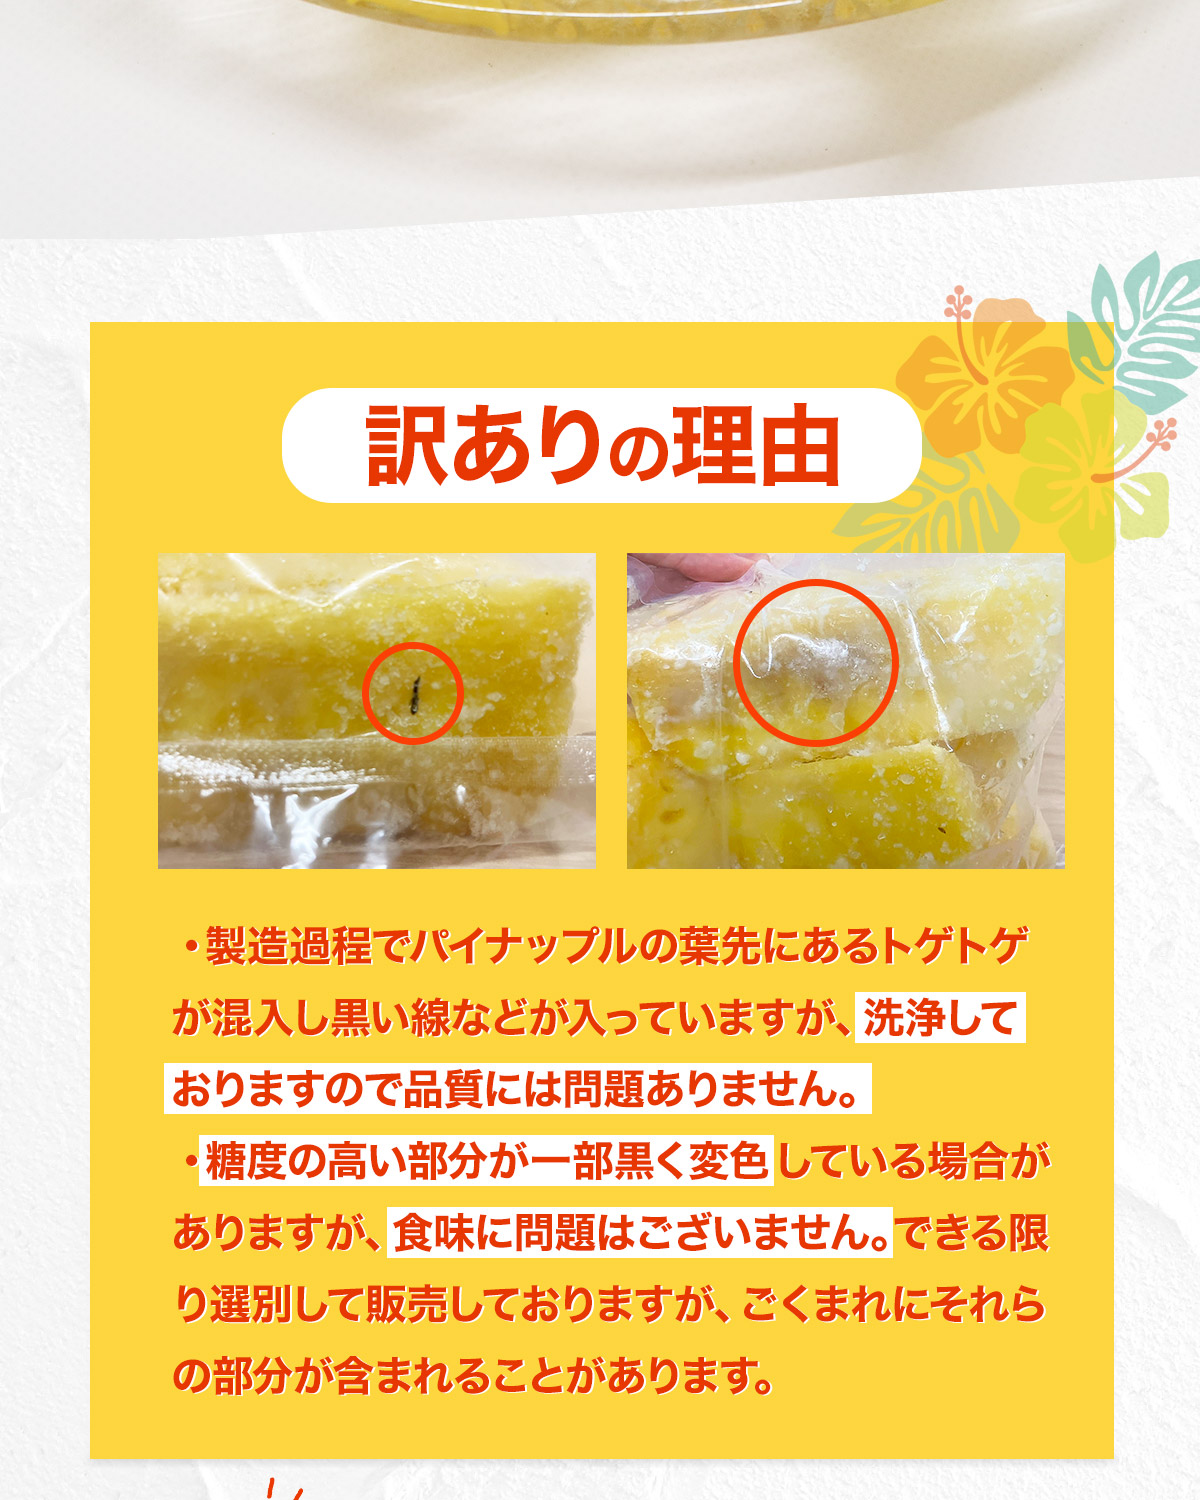 パイナップル 訳あり 冷凍 2kg 1kg×2袋 台湾産 パイン 無添加 砂糖不使用 国内加工 おやつ 大容量 自宅用 クール便